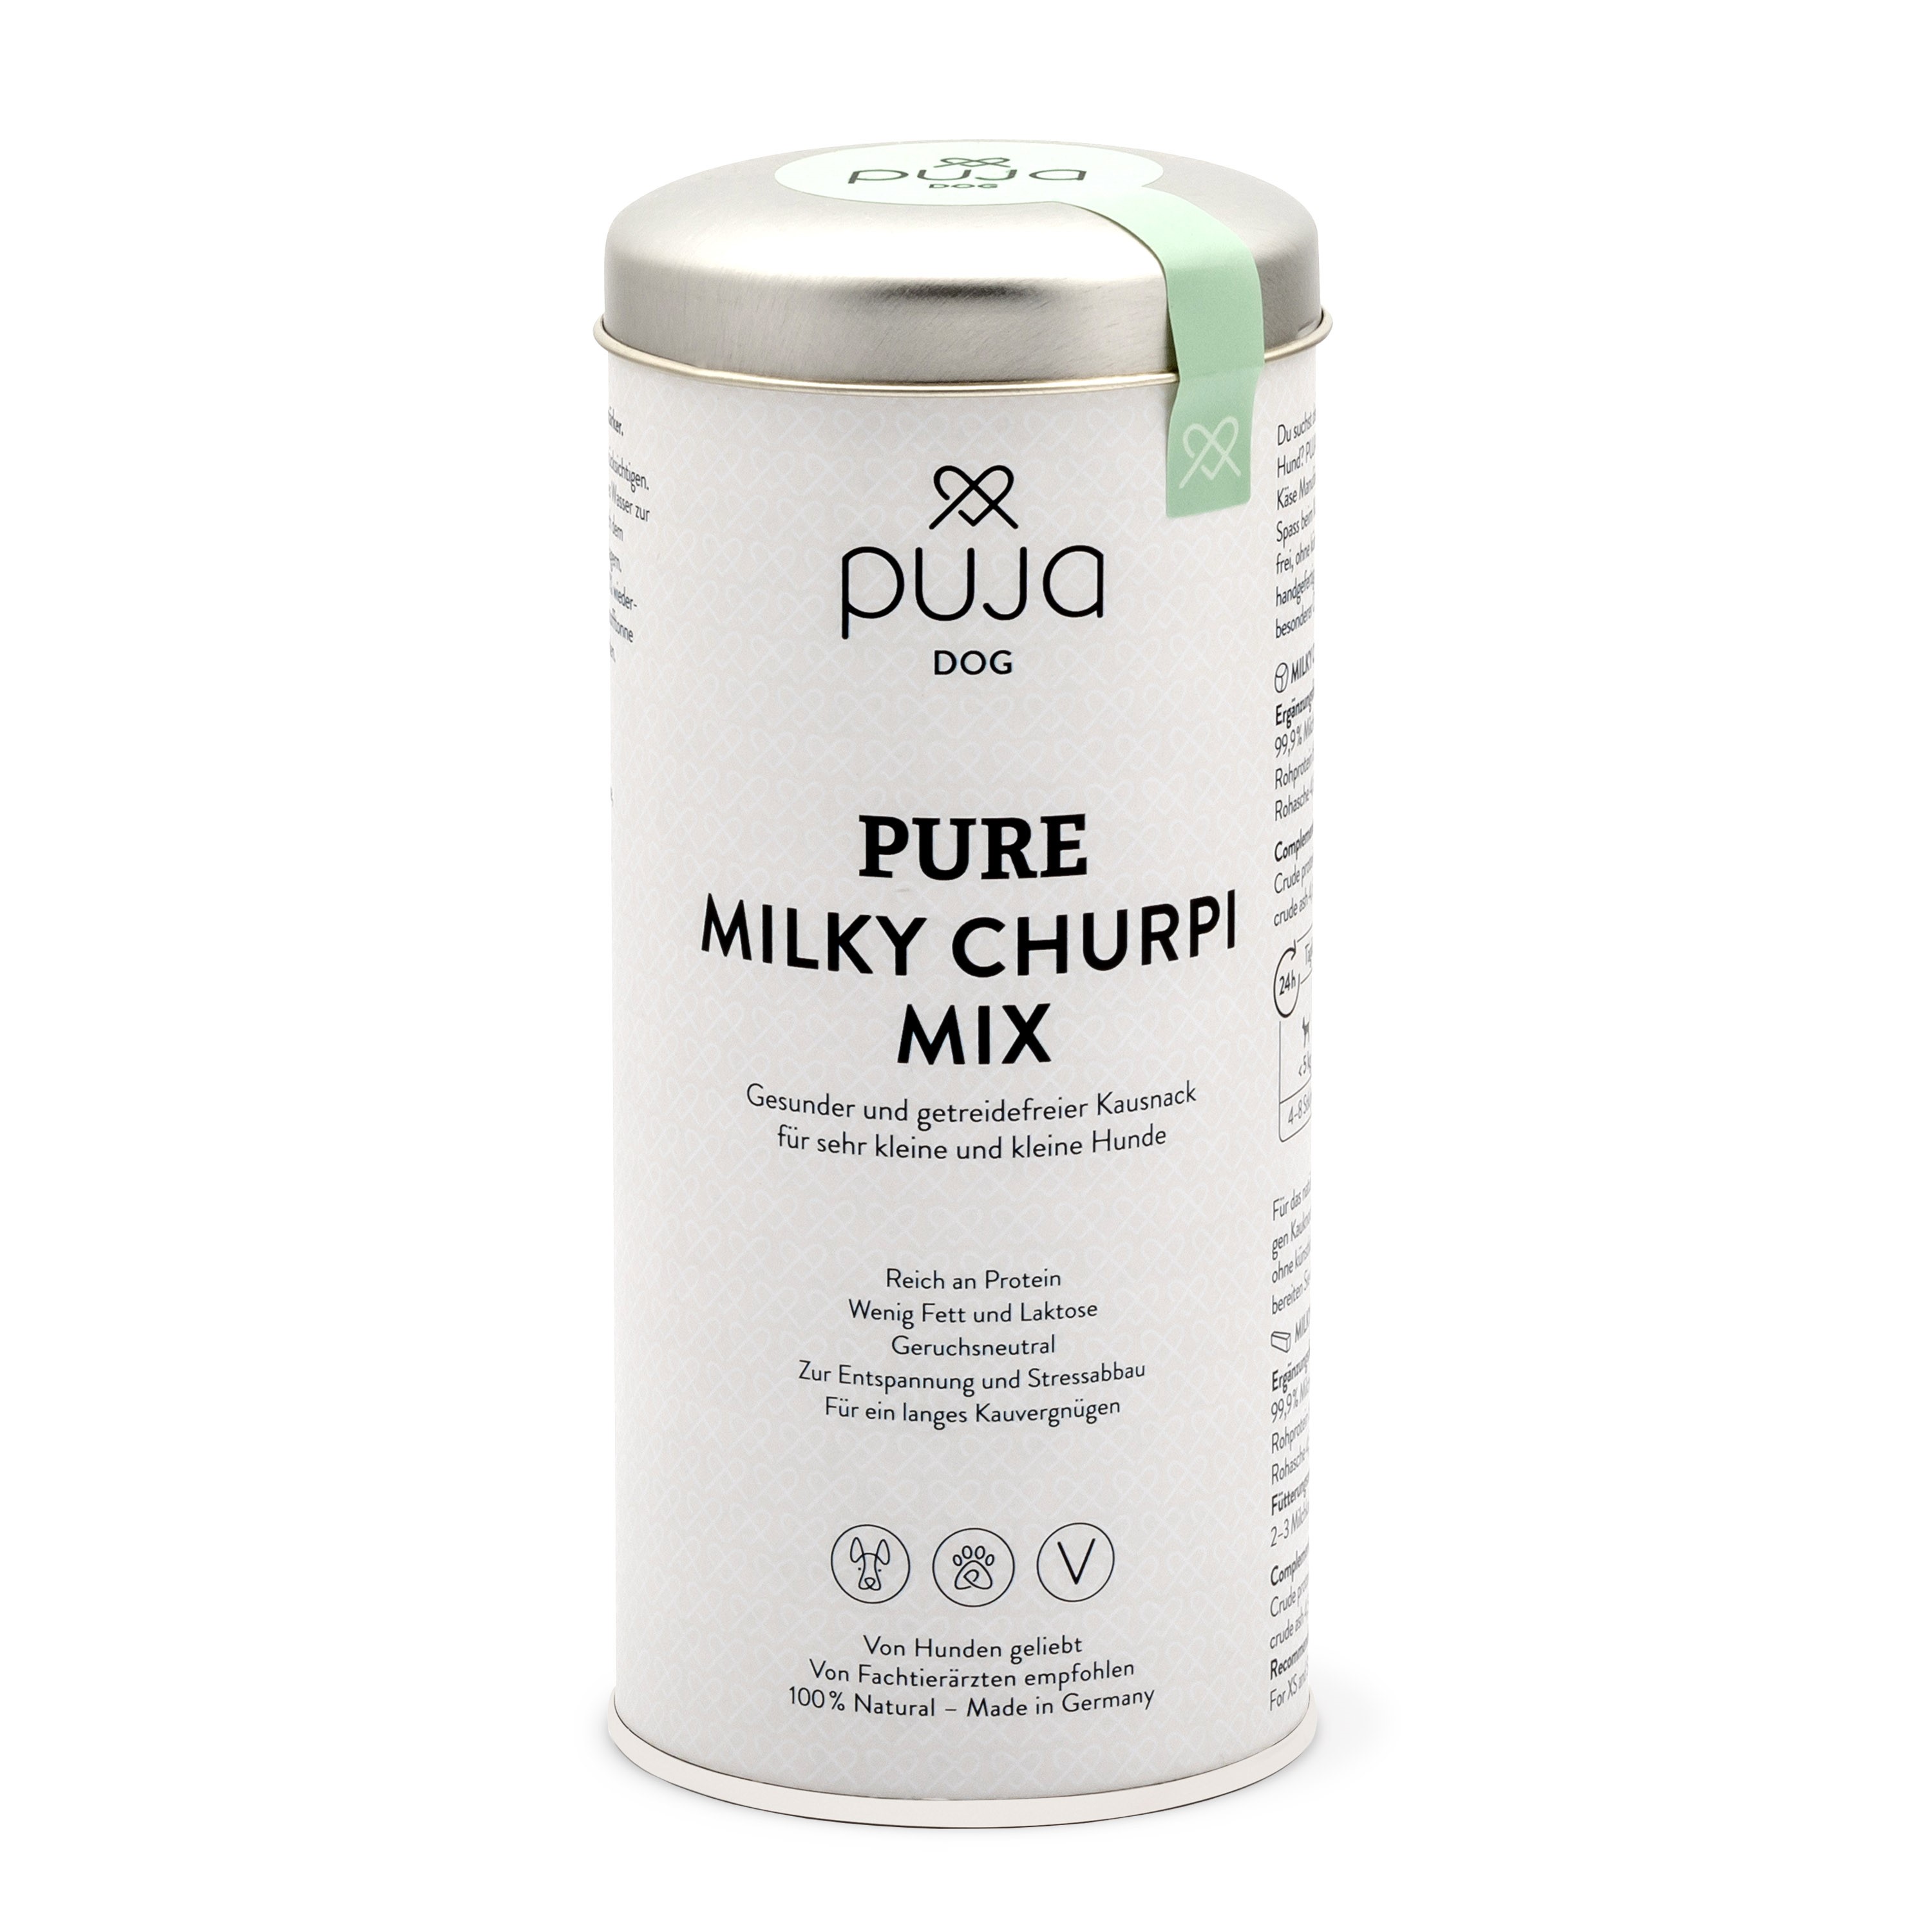 Pure Milky Churpi Mix - Gesunder und getreidefreier Kausnack für sehr kleine und kleine Hunde 110g